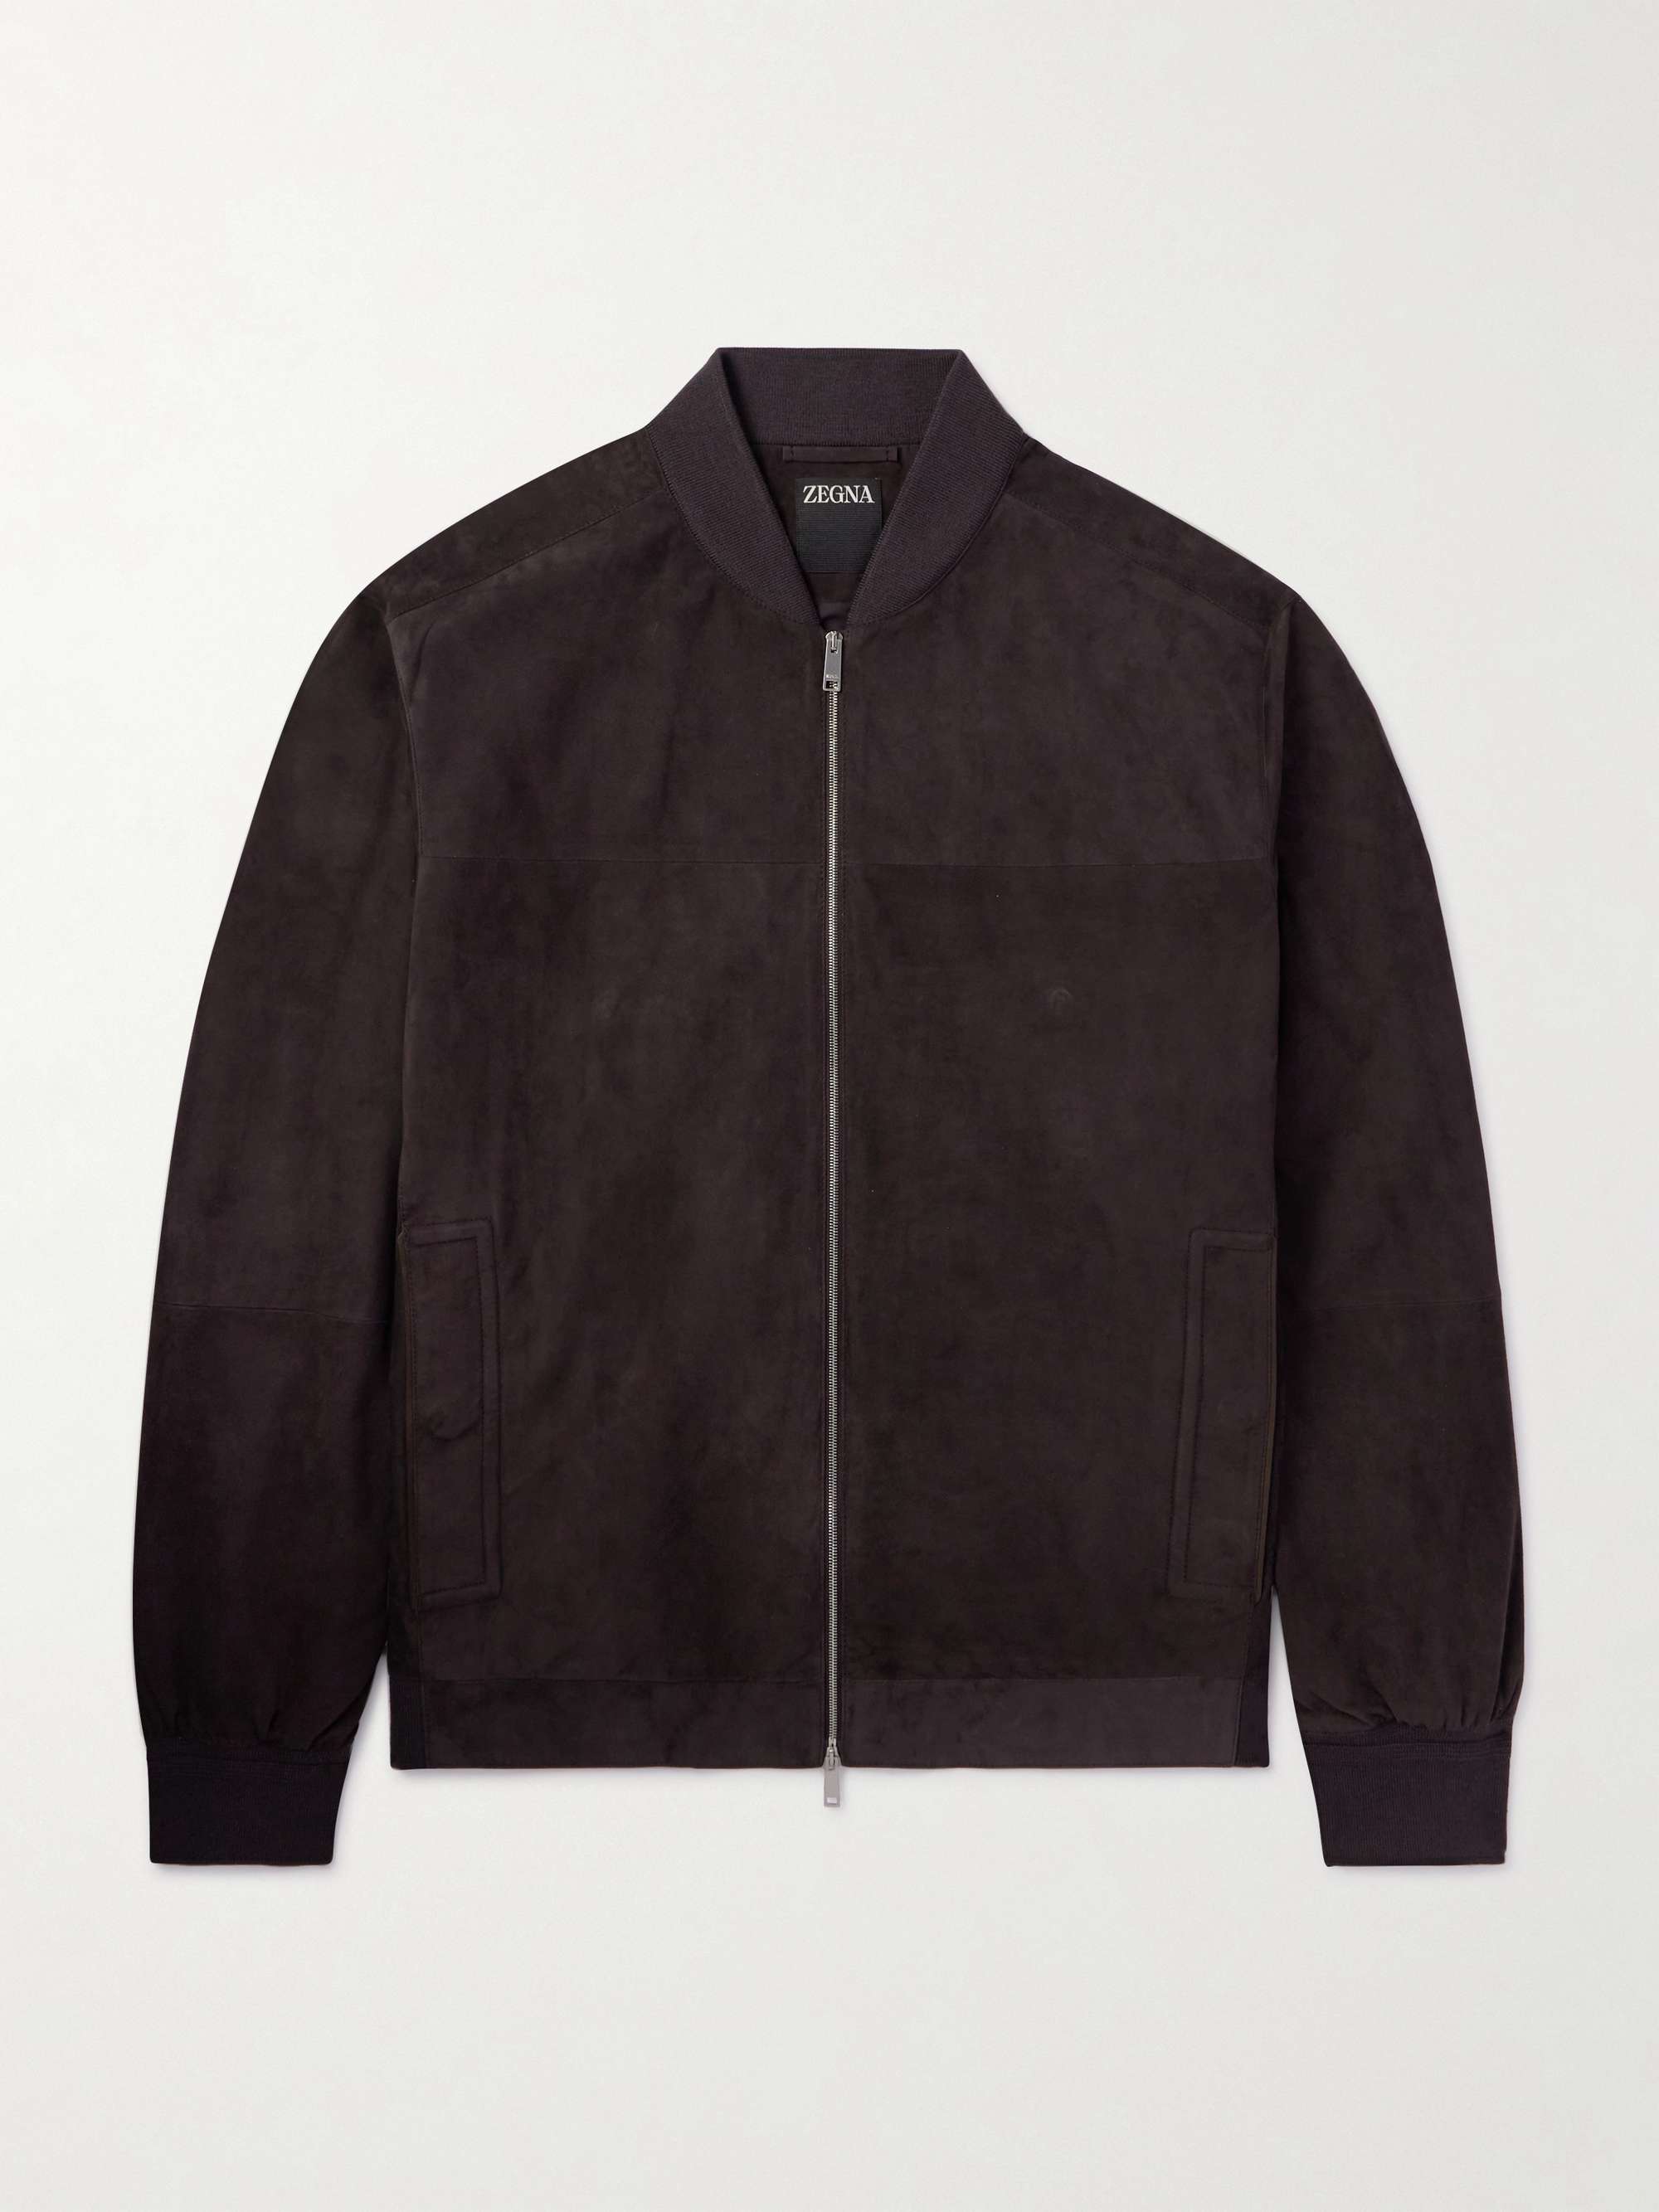 ZEGNA Leather-Trimmed Suede Bomber Jacket for Men | MR PORTER